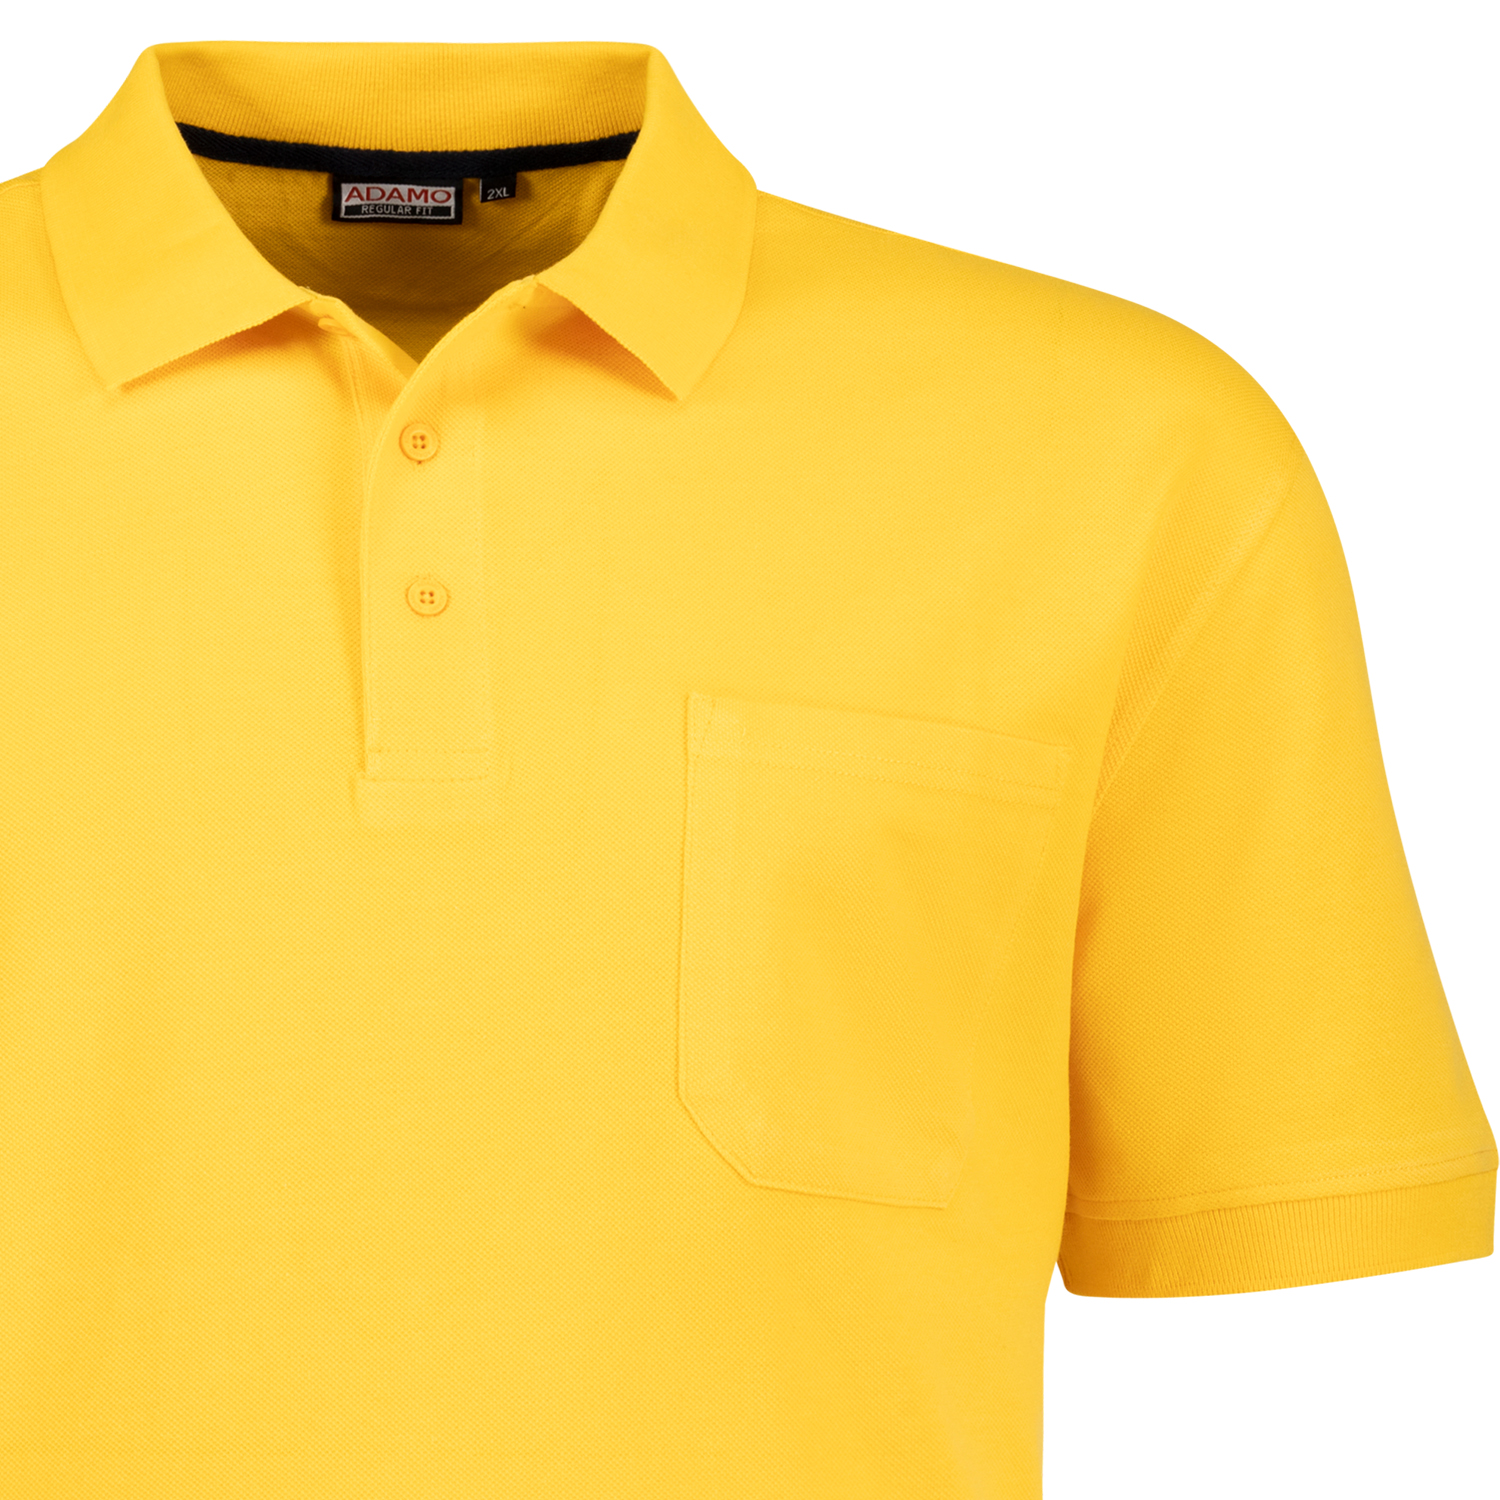 ADAMO Herren Pique Polohemd kurzärmlig Modell KENO in gelb bis Übergröße 10XL Regular Fit